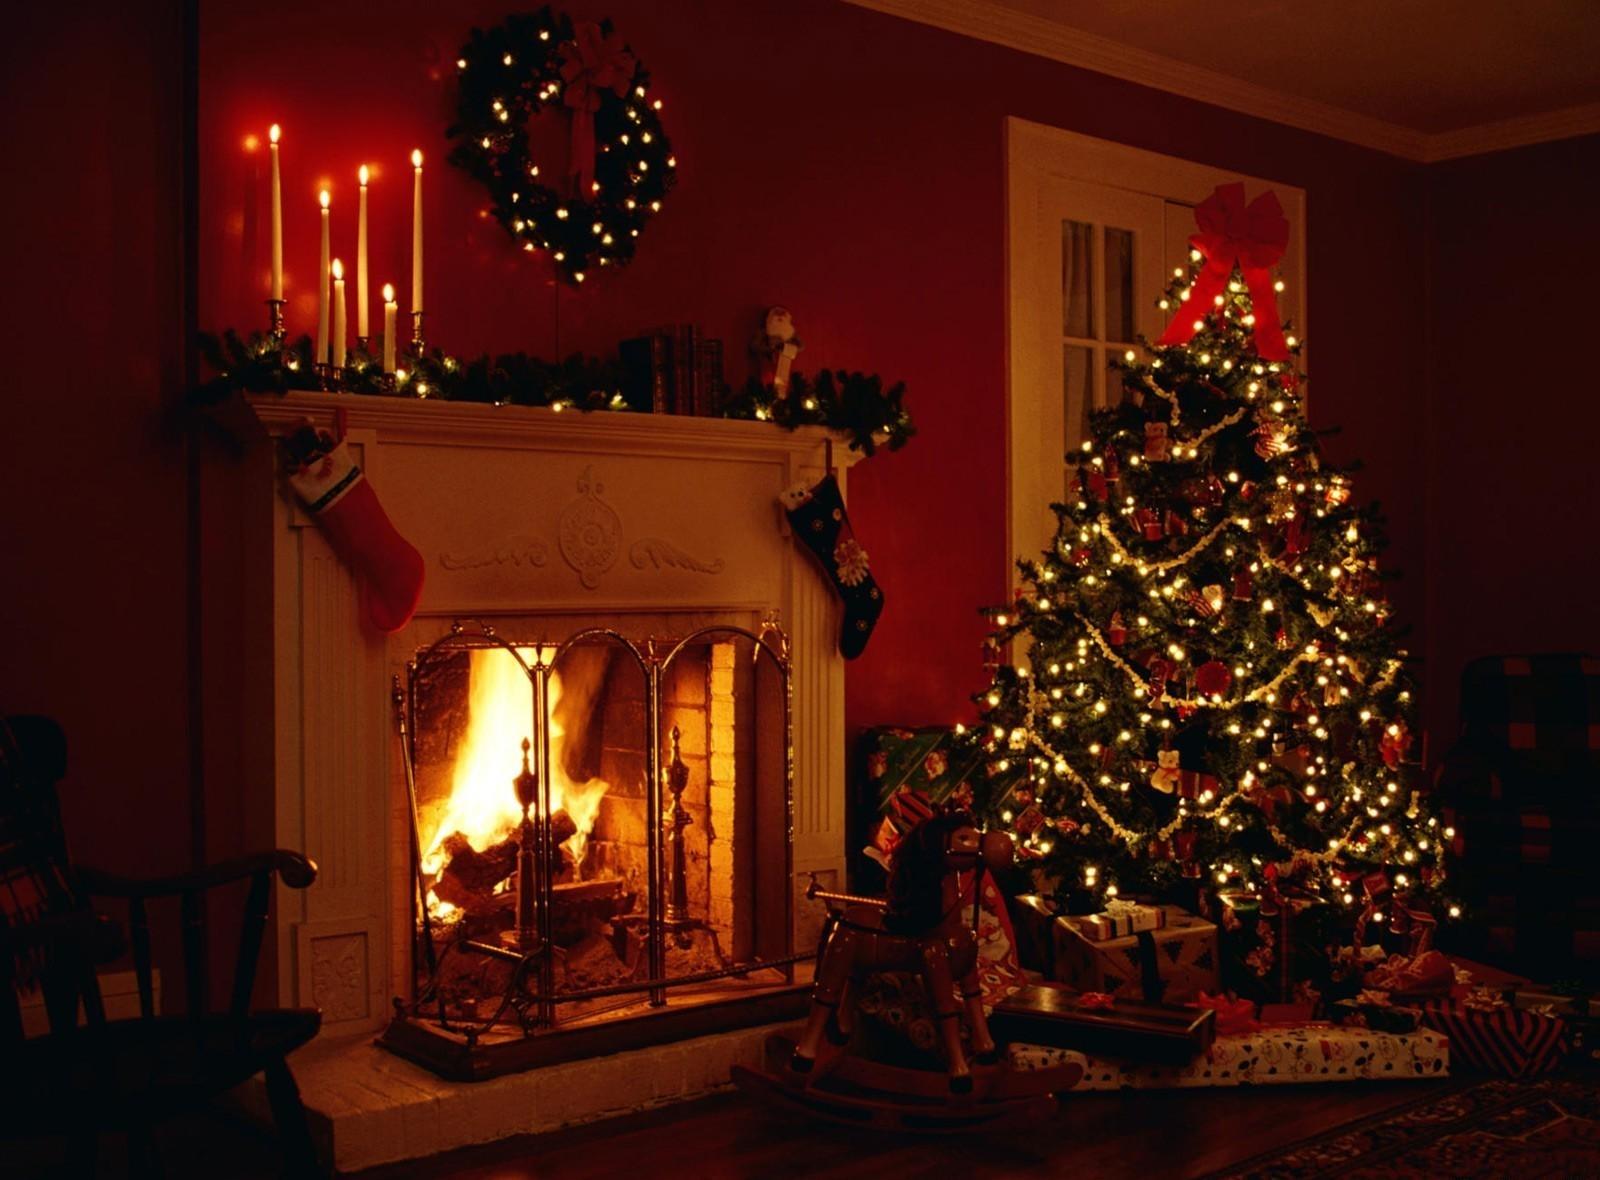 Fireplace, Christmas.8 kbyte, on the desktop